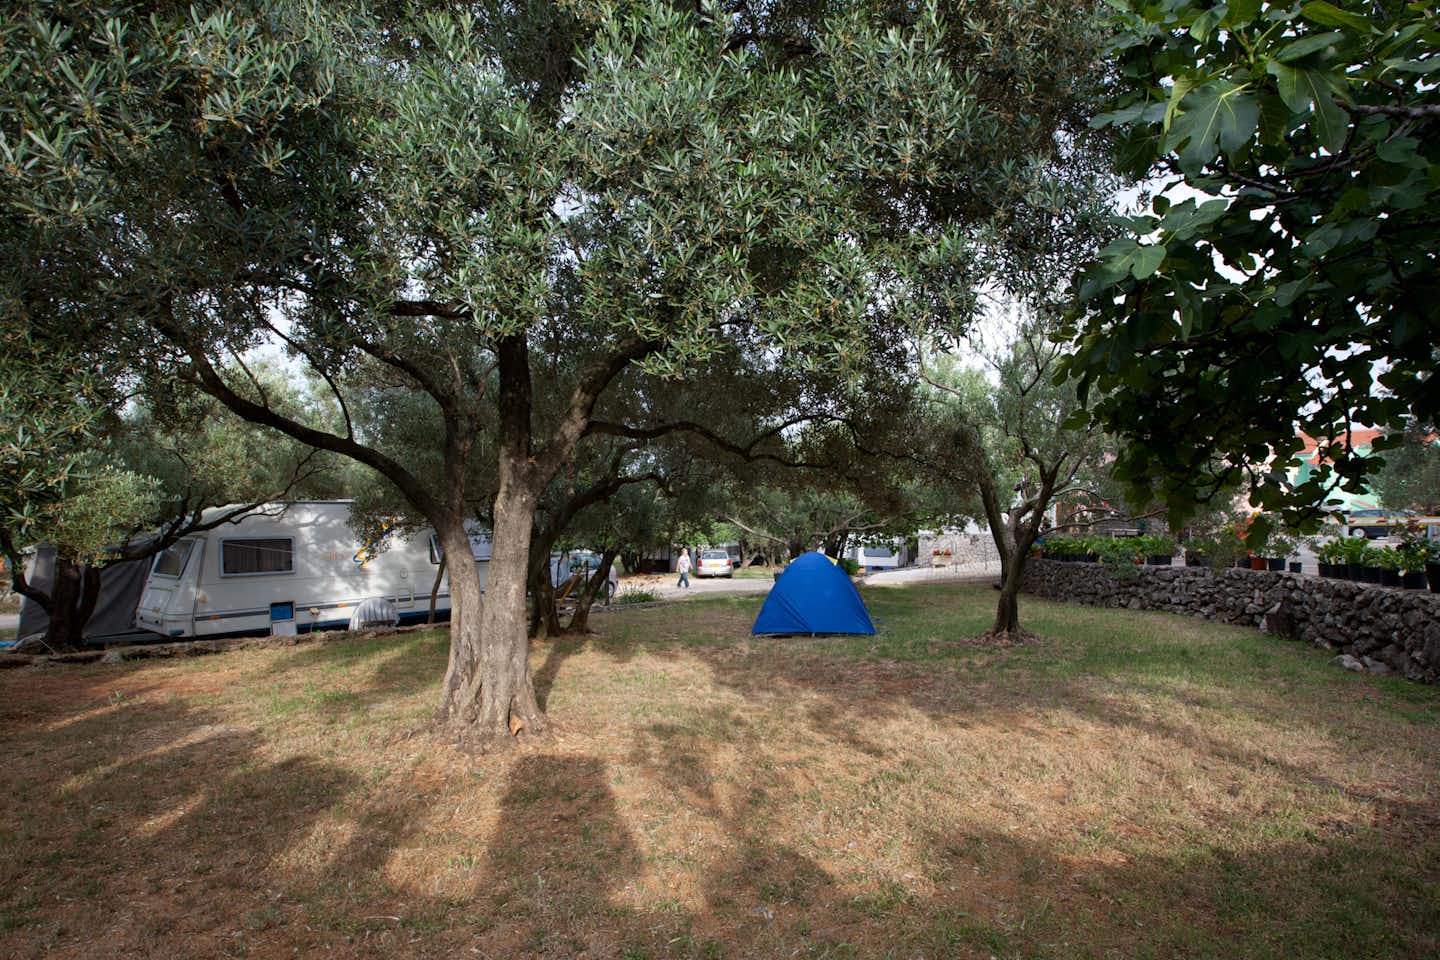 Camping Bor -  Campingbereich für Zelte und Wohnwagen im Schatten der Bäume